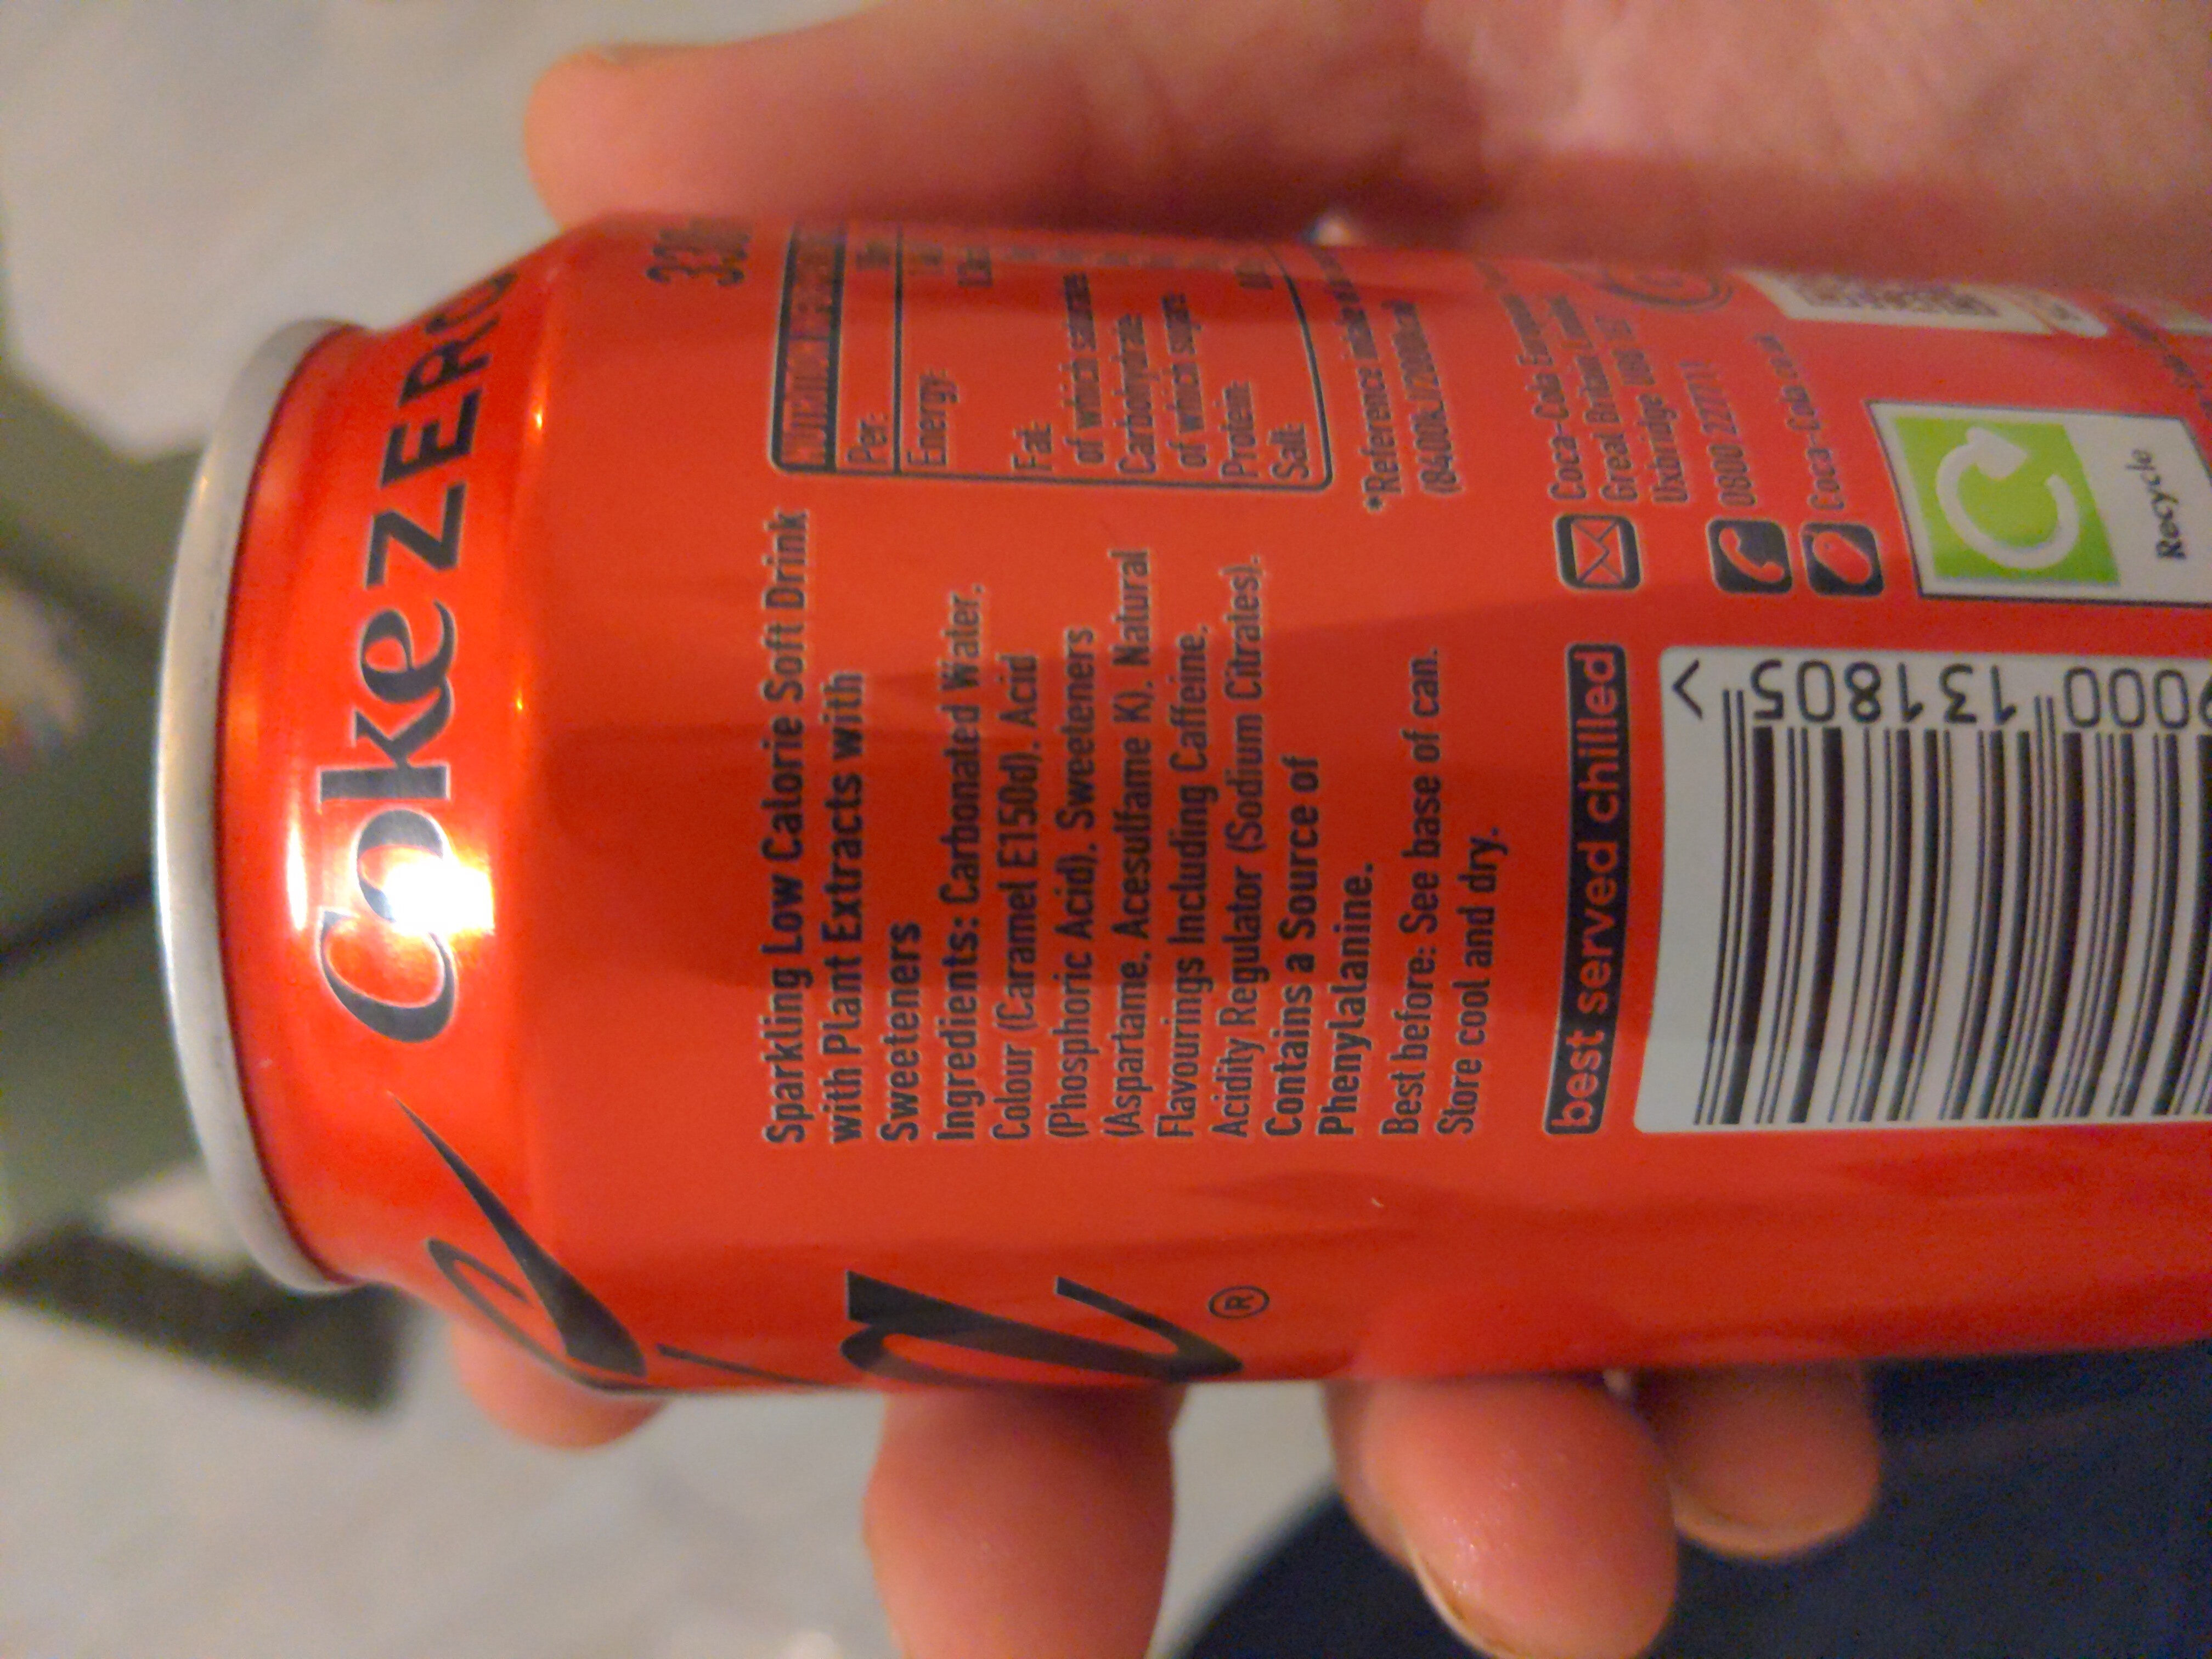 Coca cola 330 zero - Ingredienti - en